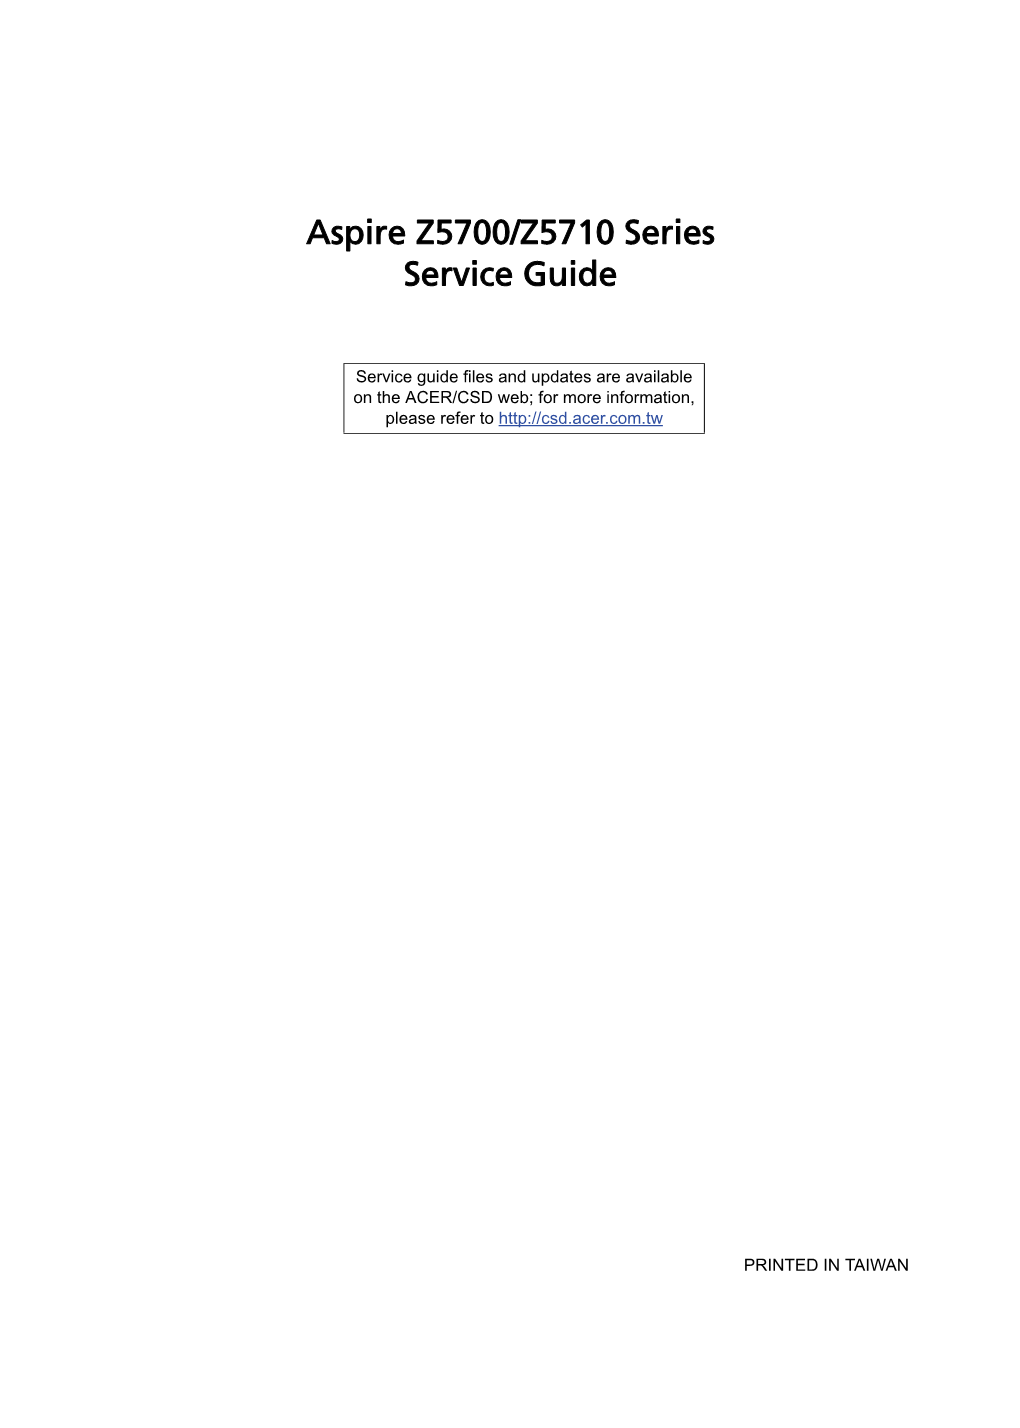 Aspire Z5700/Z5710 Series Service Guide